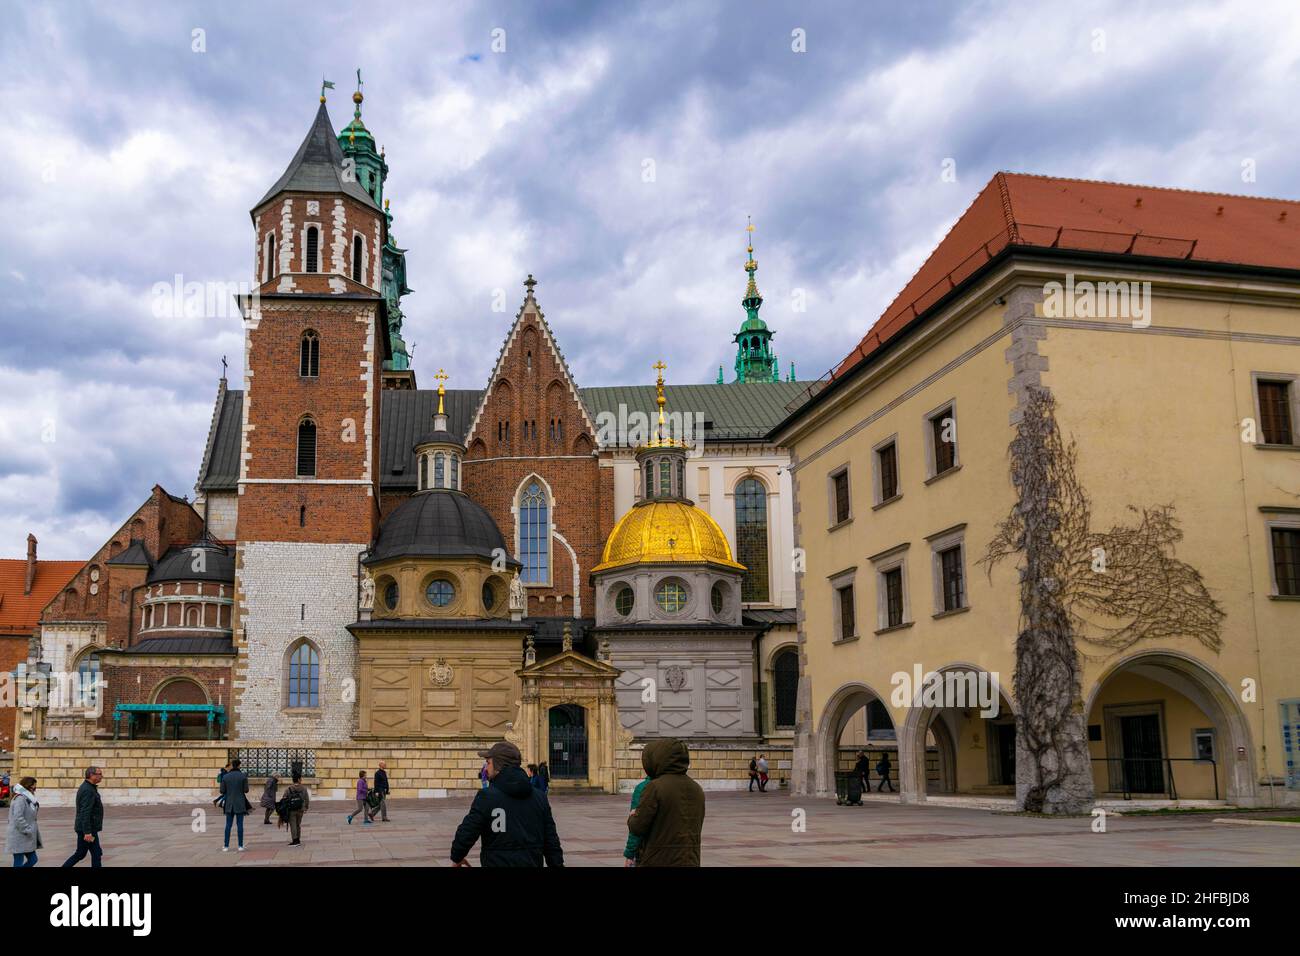 Cracovia, Polonia - 9th marzo 2020: Castello reale di Wawel a Cracovia. La residenza reale consiste in un certo numero di strutture di periodi differenti situate Foto Stock